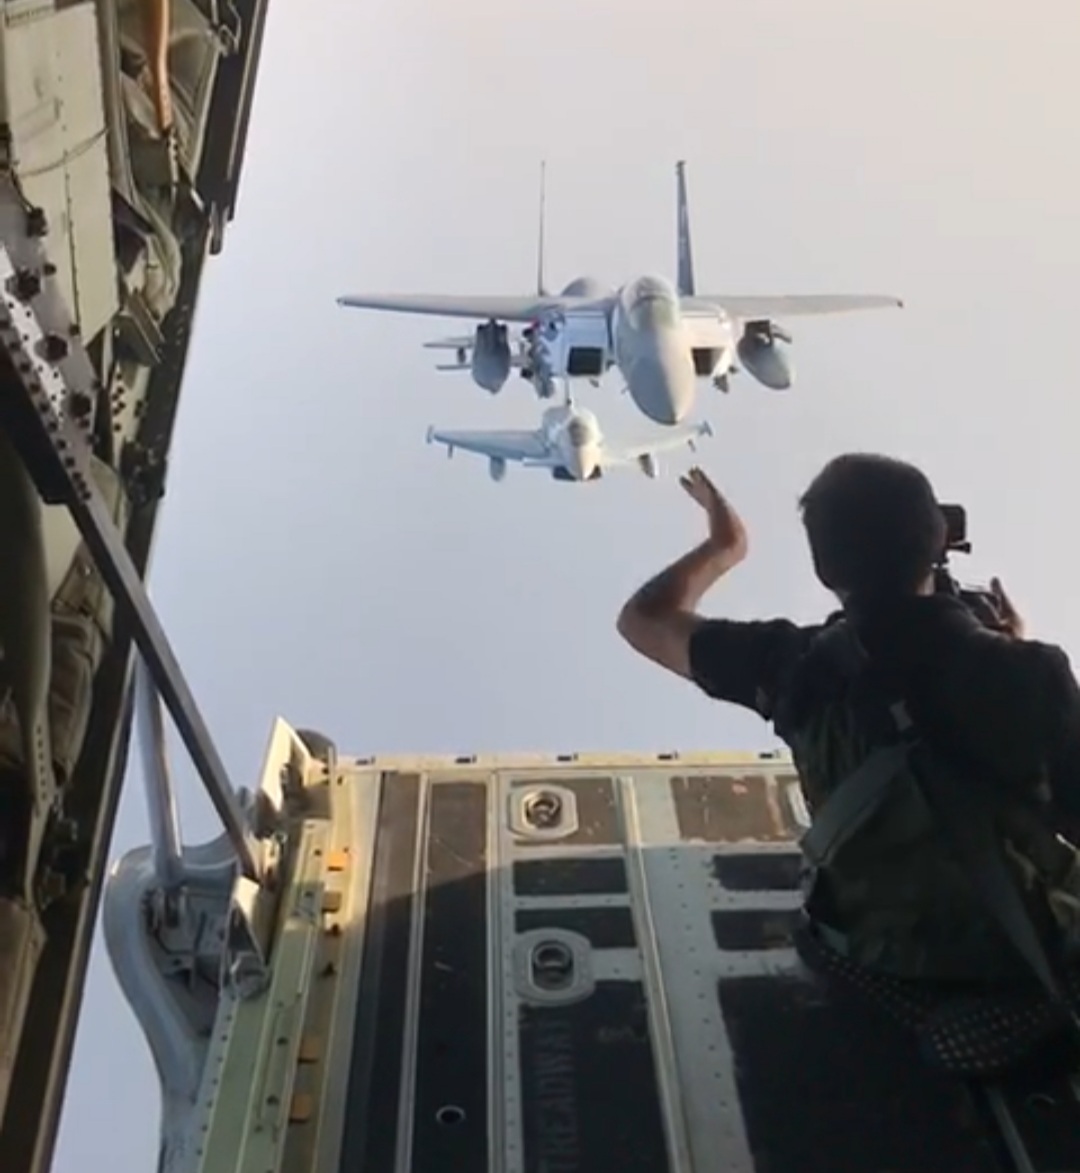 لقطات تحبس الأنفاس لمصور يأخذ اللقطات للمقاتلات أثناء استعدادات الاستعراض الجوي لـ اليوم الوطني ٩٠